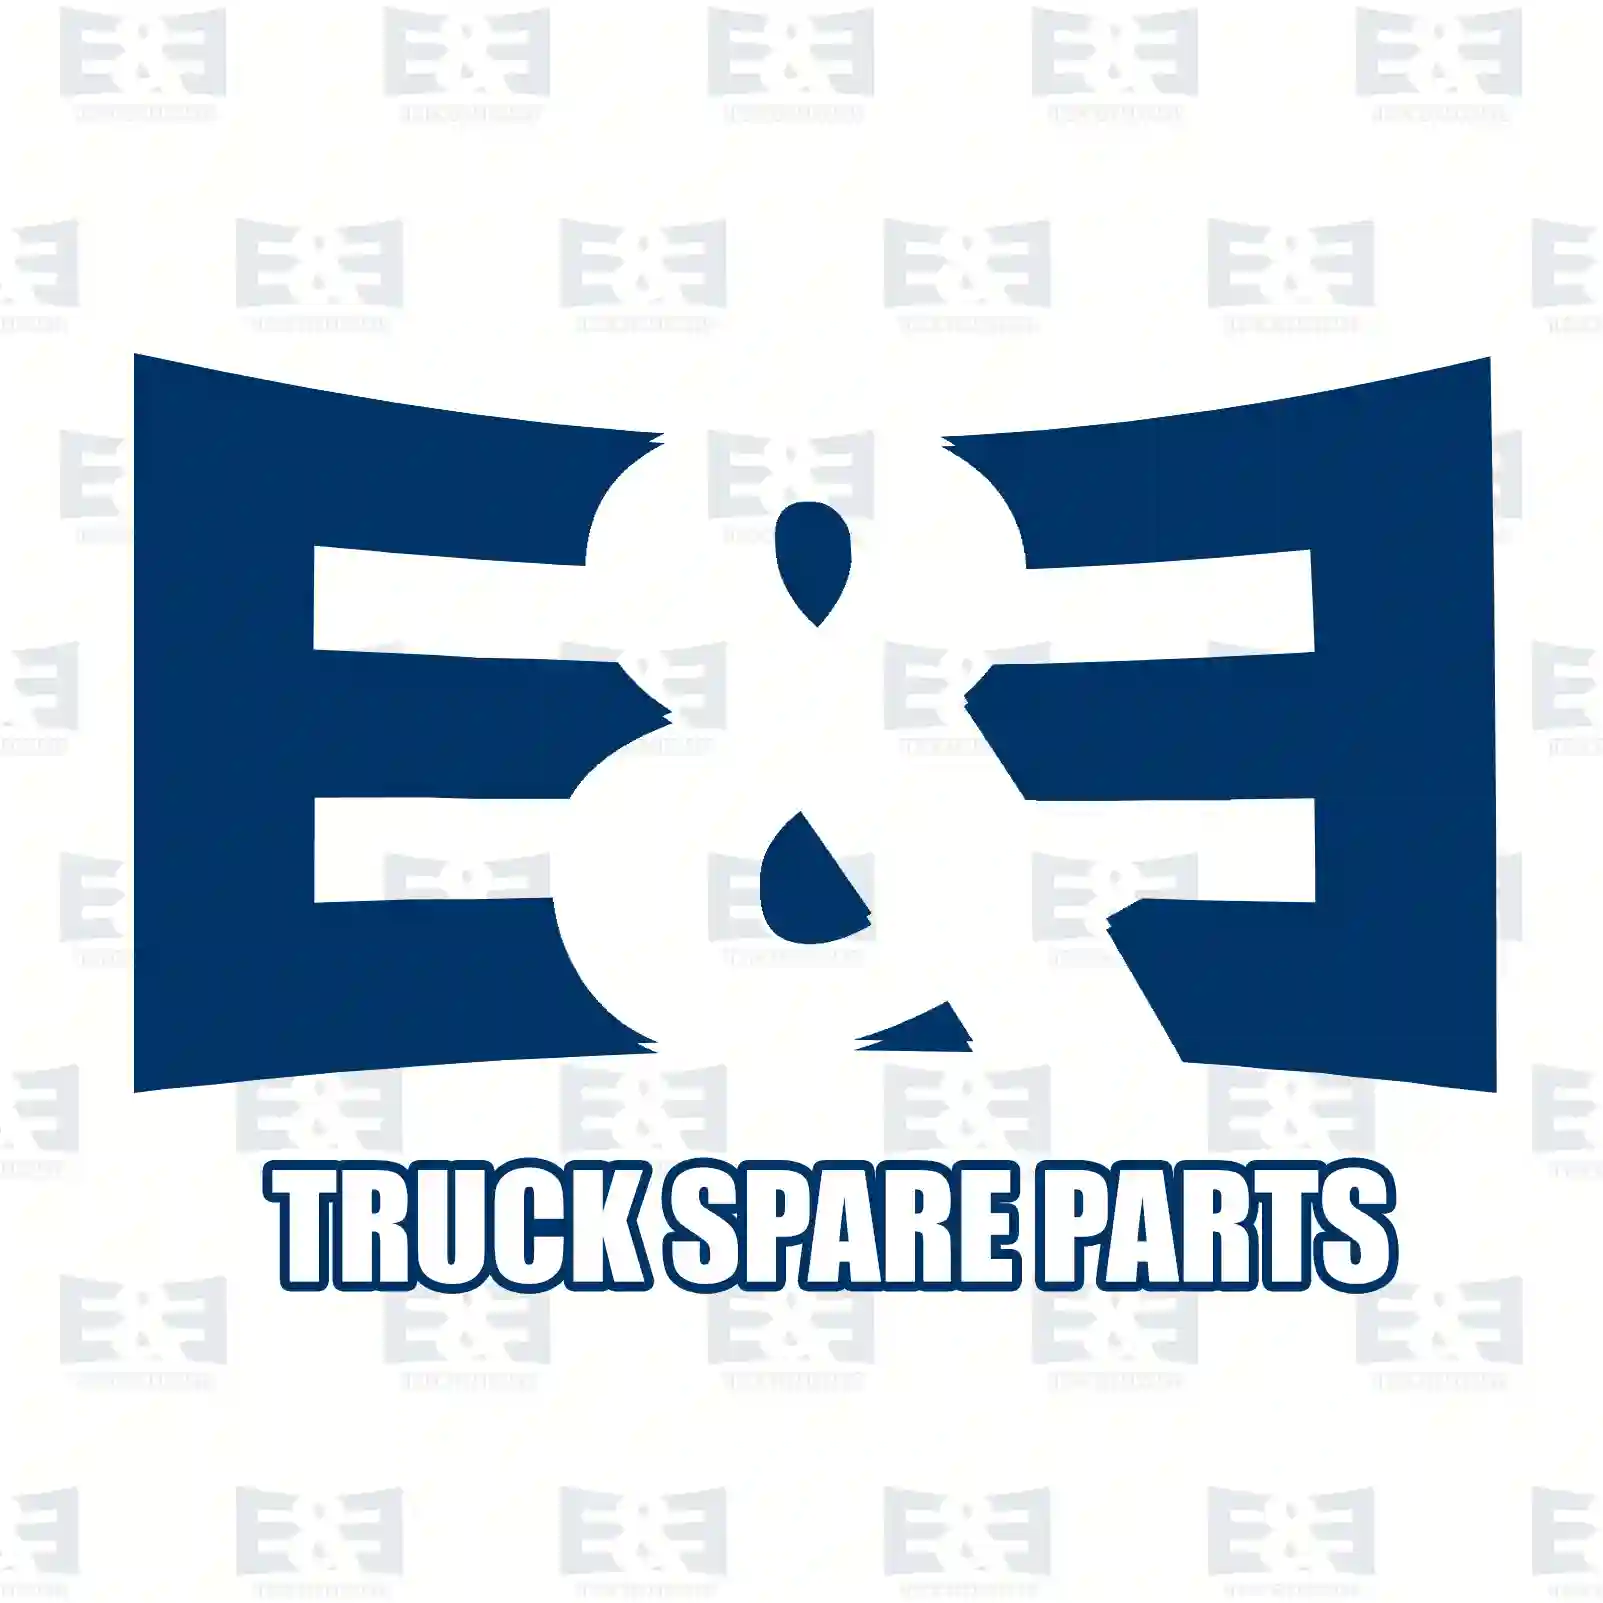 Control arm, 2E2278987, 1667295 ||  2E2278987 E&E Truck Spare Parts | Truck Spare Parts, Auotomotive Spare Parts Control arm, 2E2278987, 1667295 ||  2E2278987 E&E Truck Spare Parts | Truck Spare Parts, Auotomotive Spare Parts